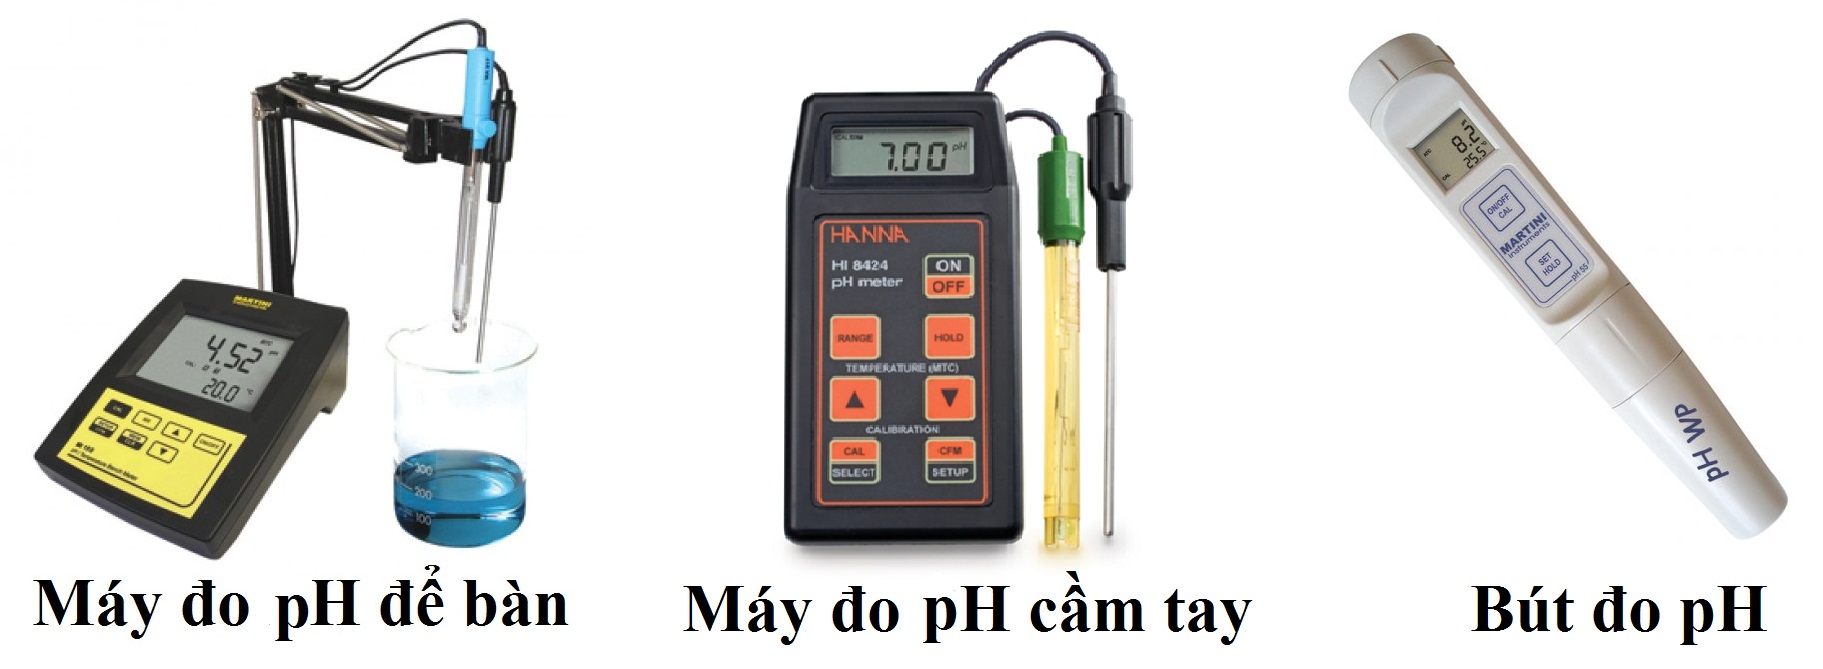 Cách sử dụng máy đo pH hiệu quả